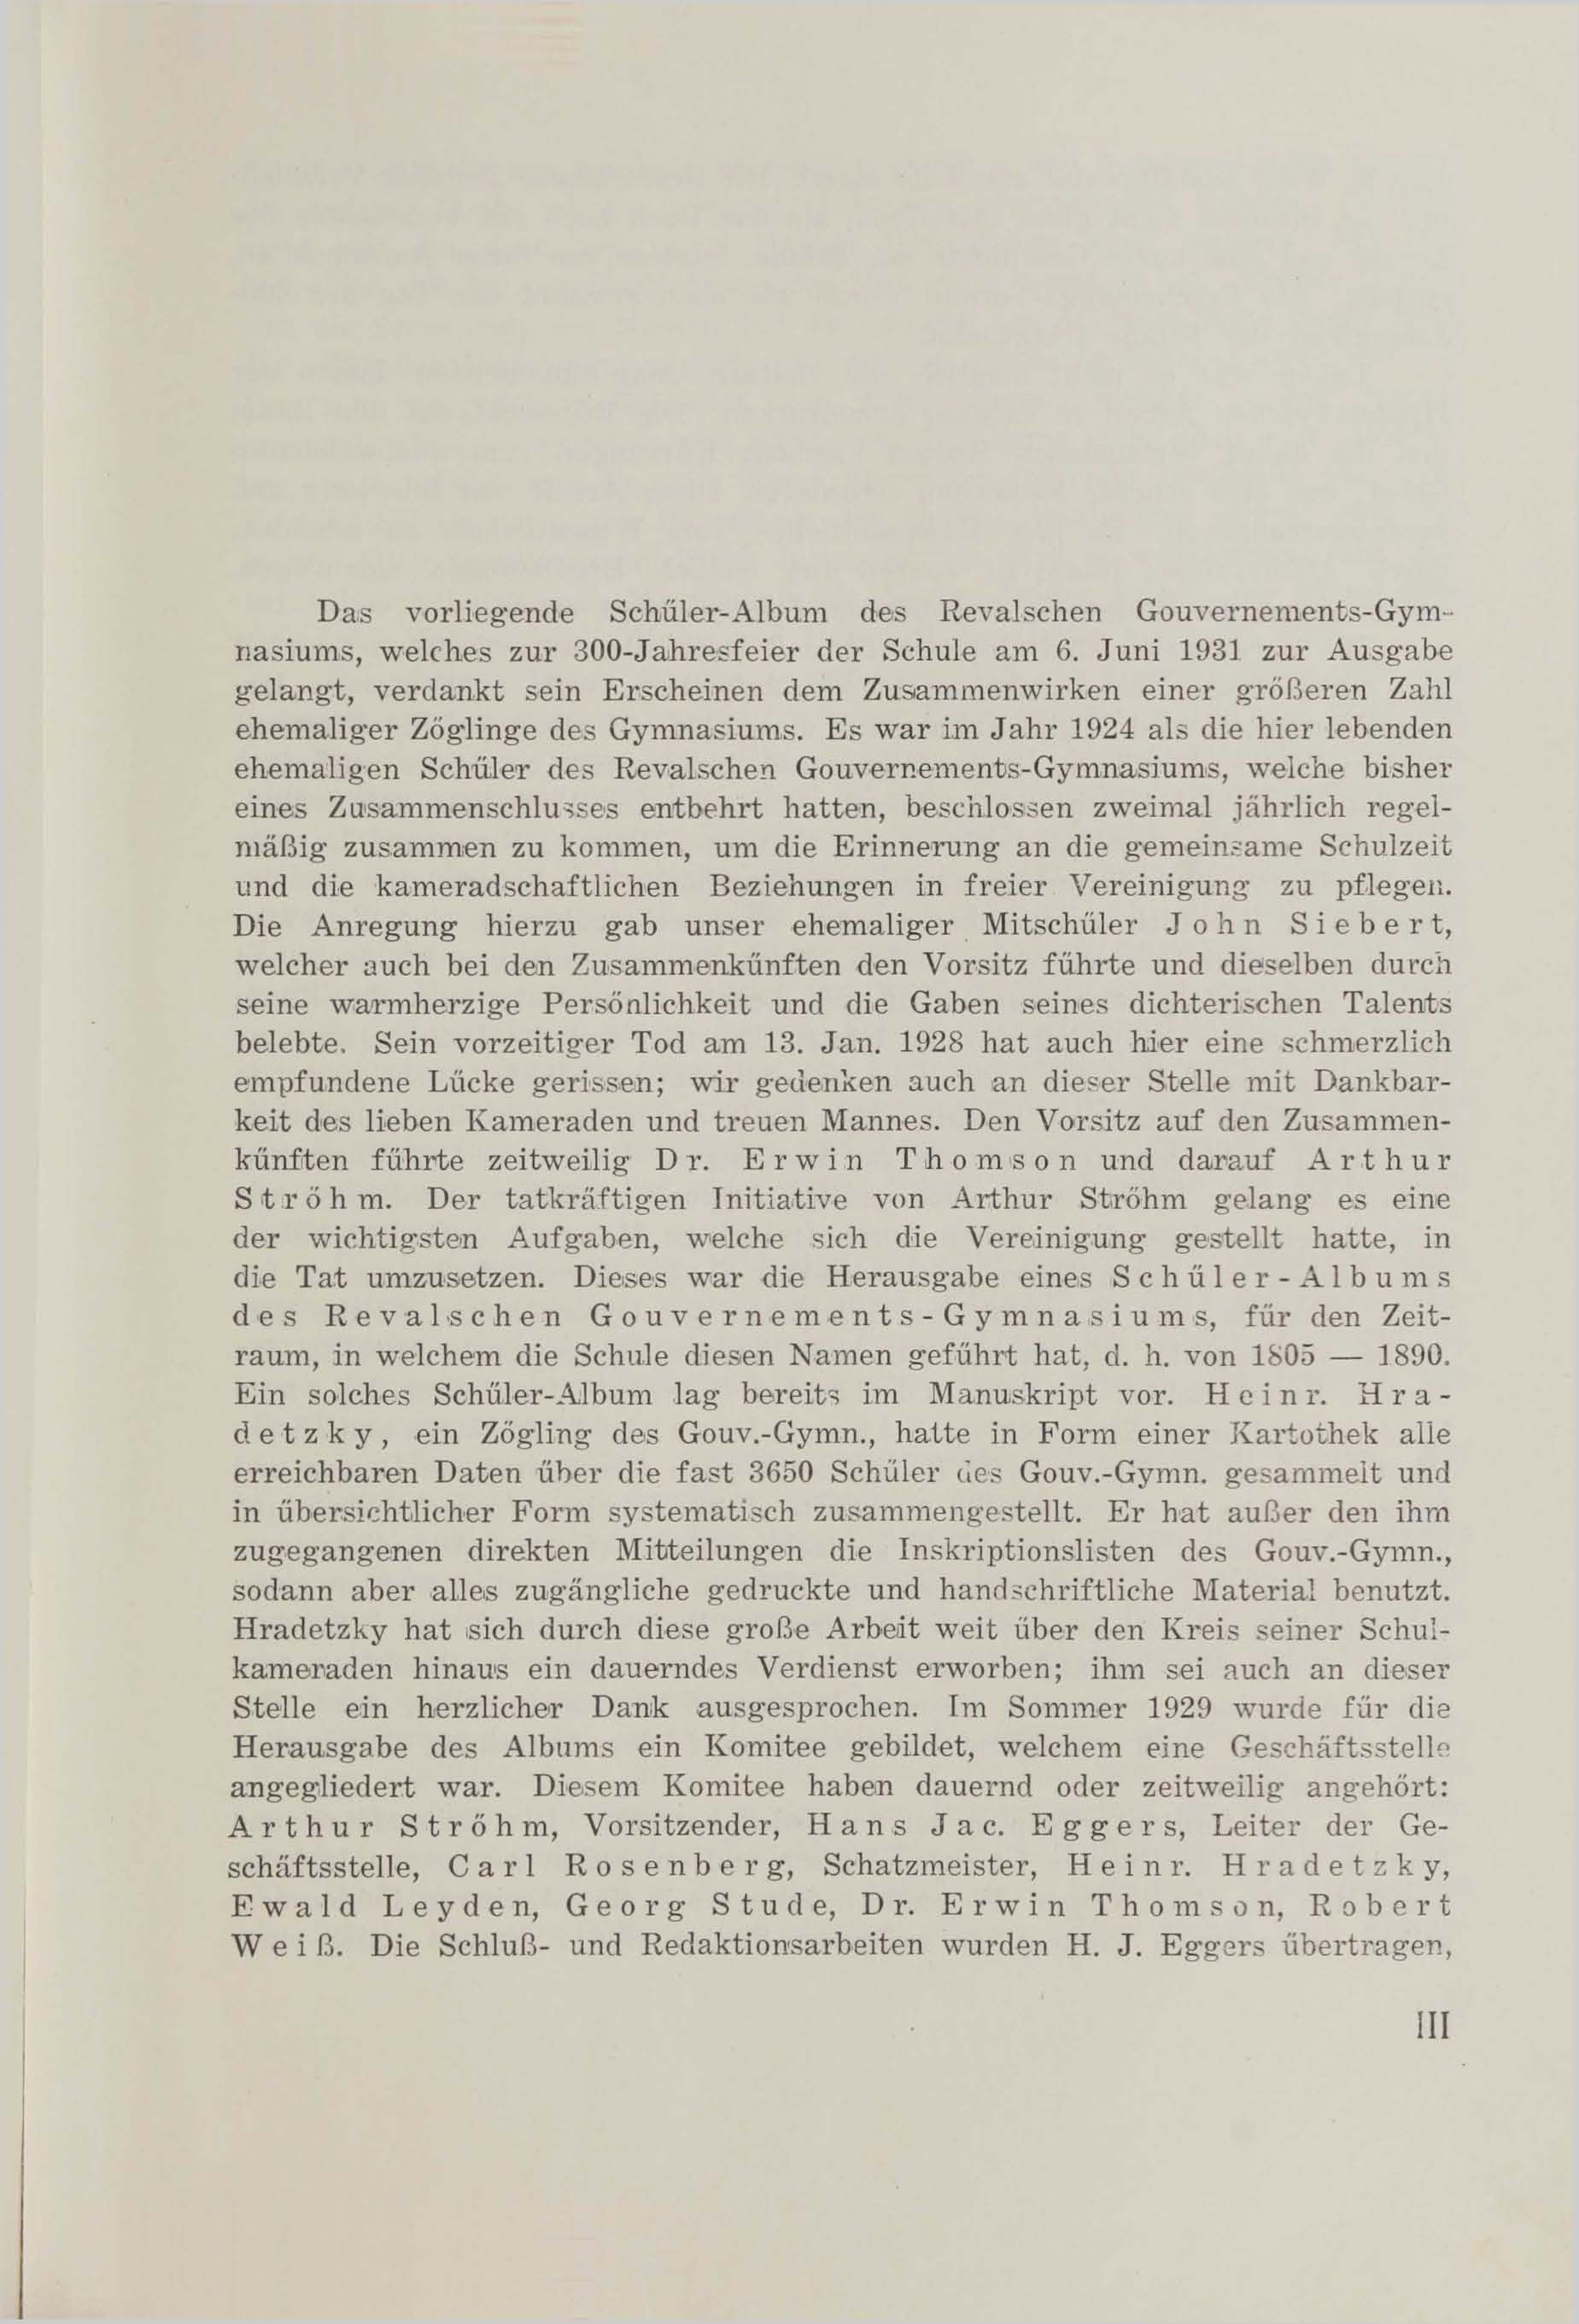 Schüler-Verzeichnis des Revalschen Gouvernements-Gymnasiums 1805–1890 (1931) | 5. (III) Haupttext